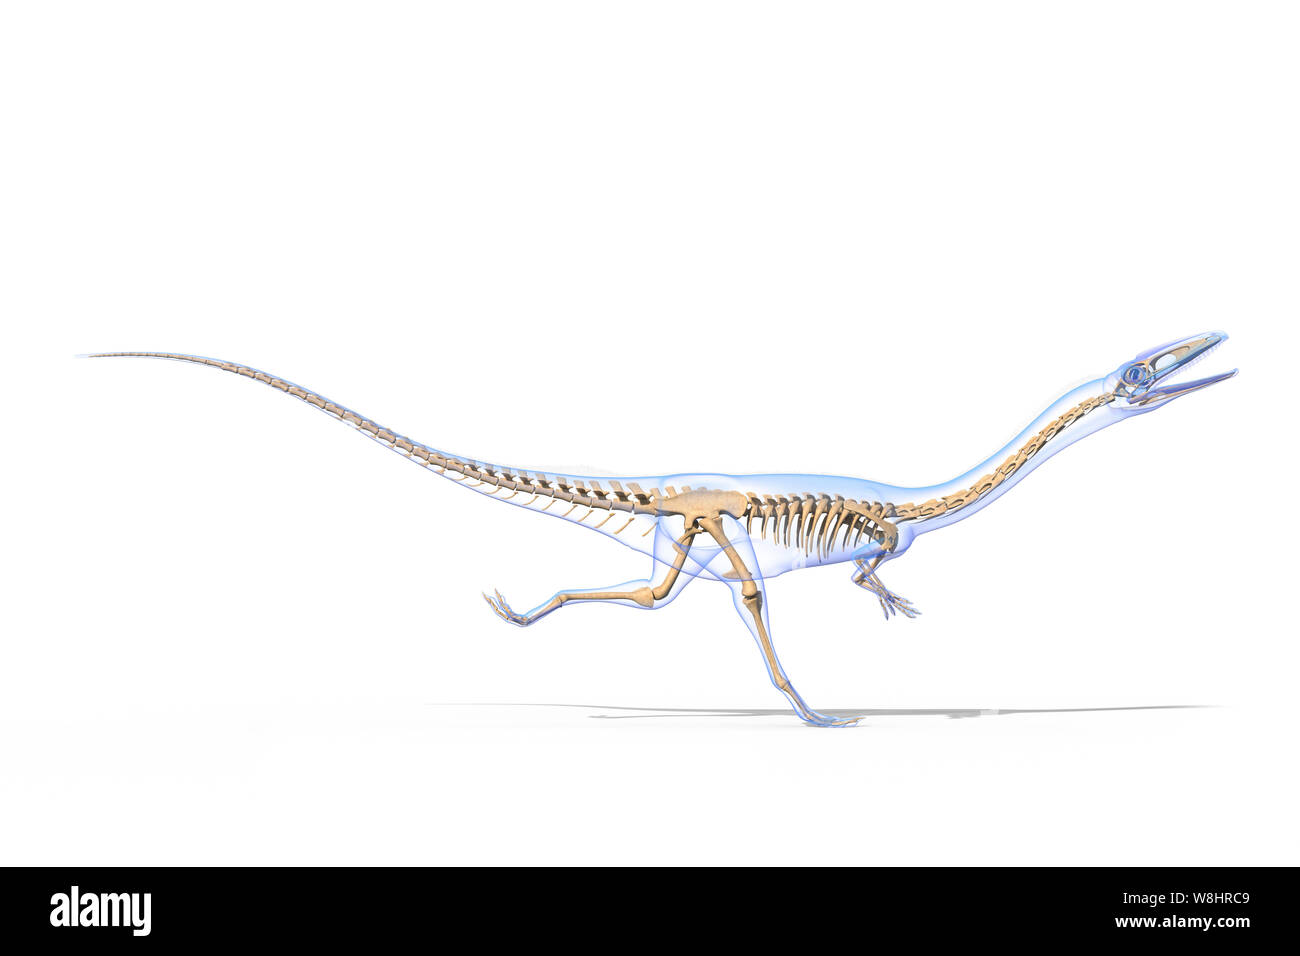 Dinosauro Coelophysis in esecuzione, struttura scheletrica, illustrazione. Questi dinosauri vivevano nel periodo triassico, circa 203-196 milioni di anni fa. Foto Stock